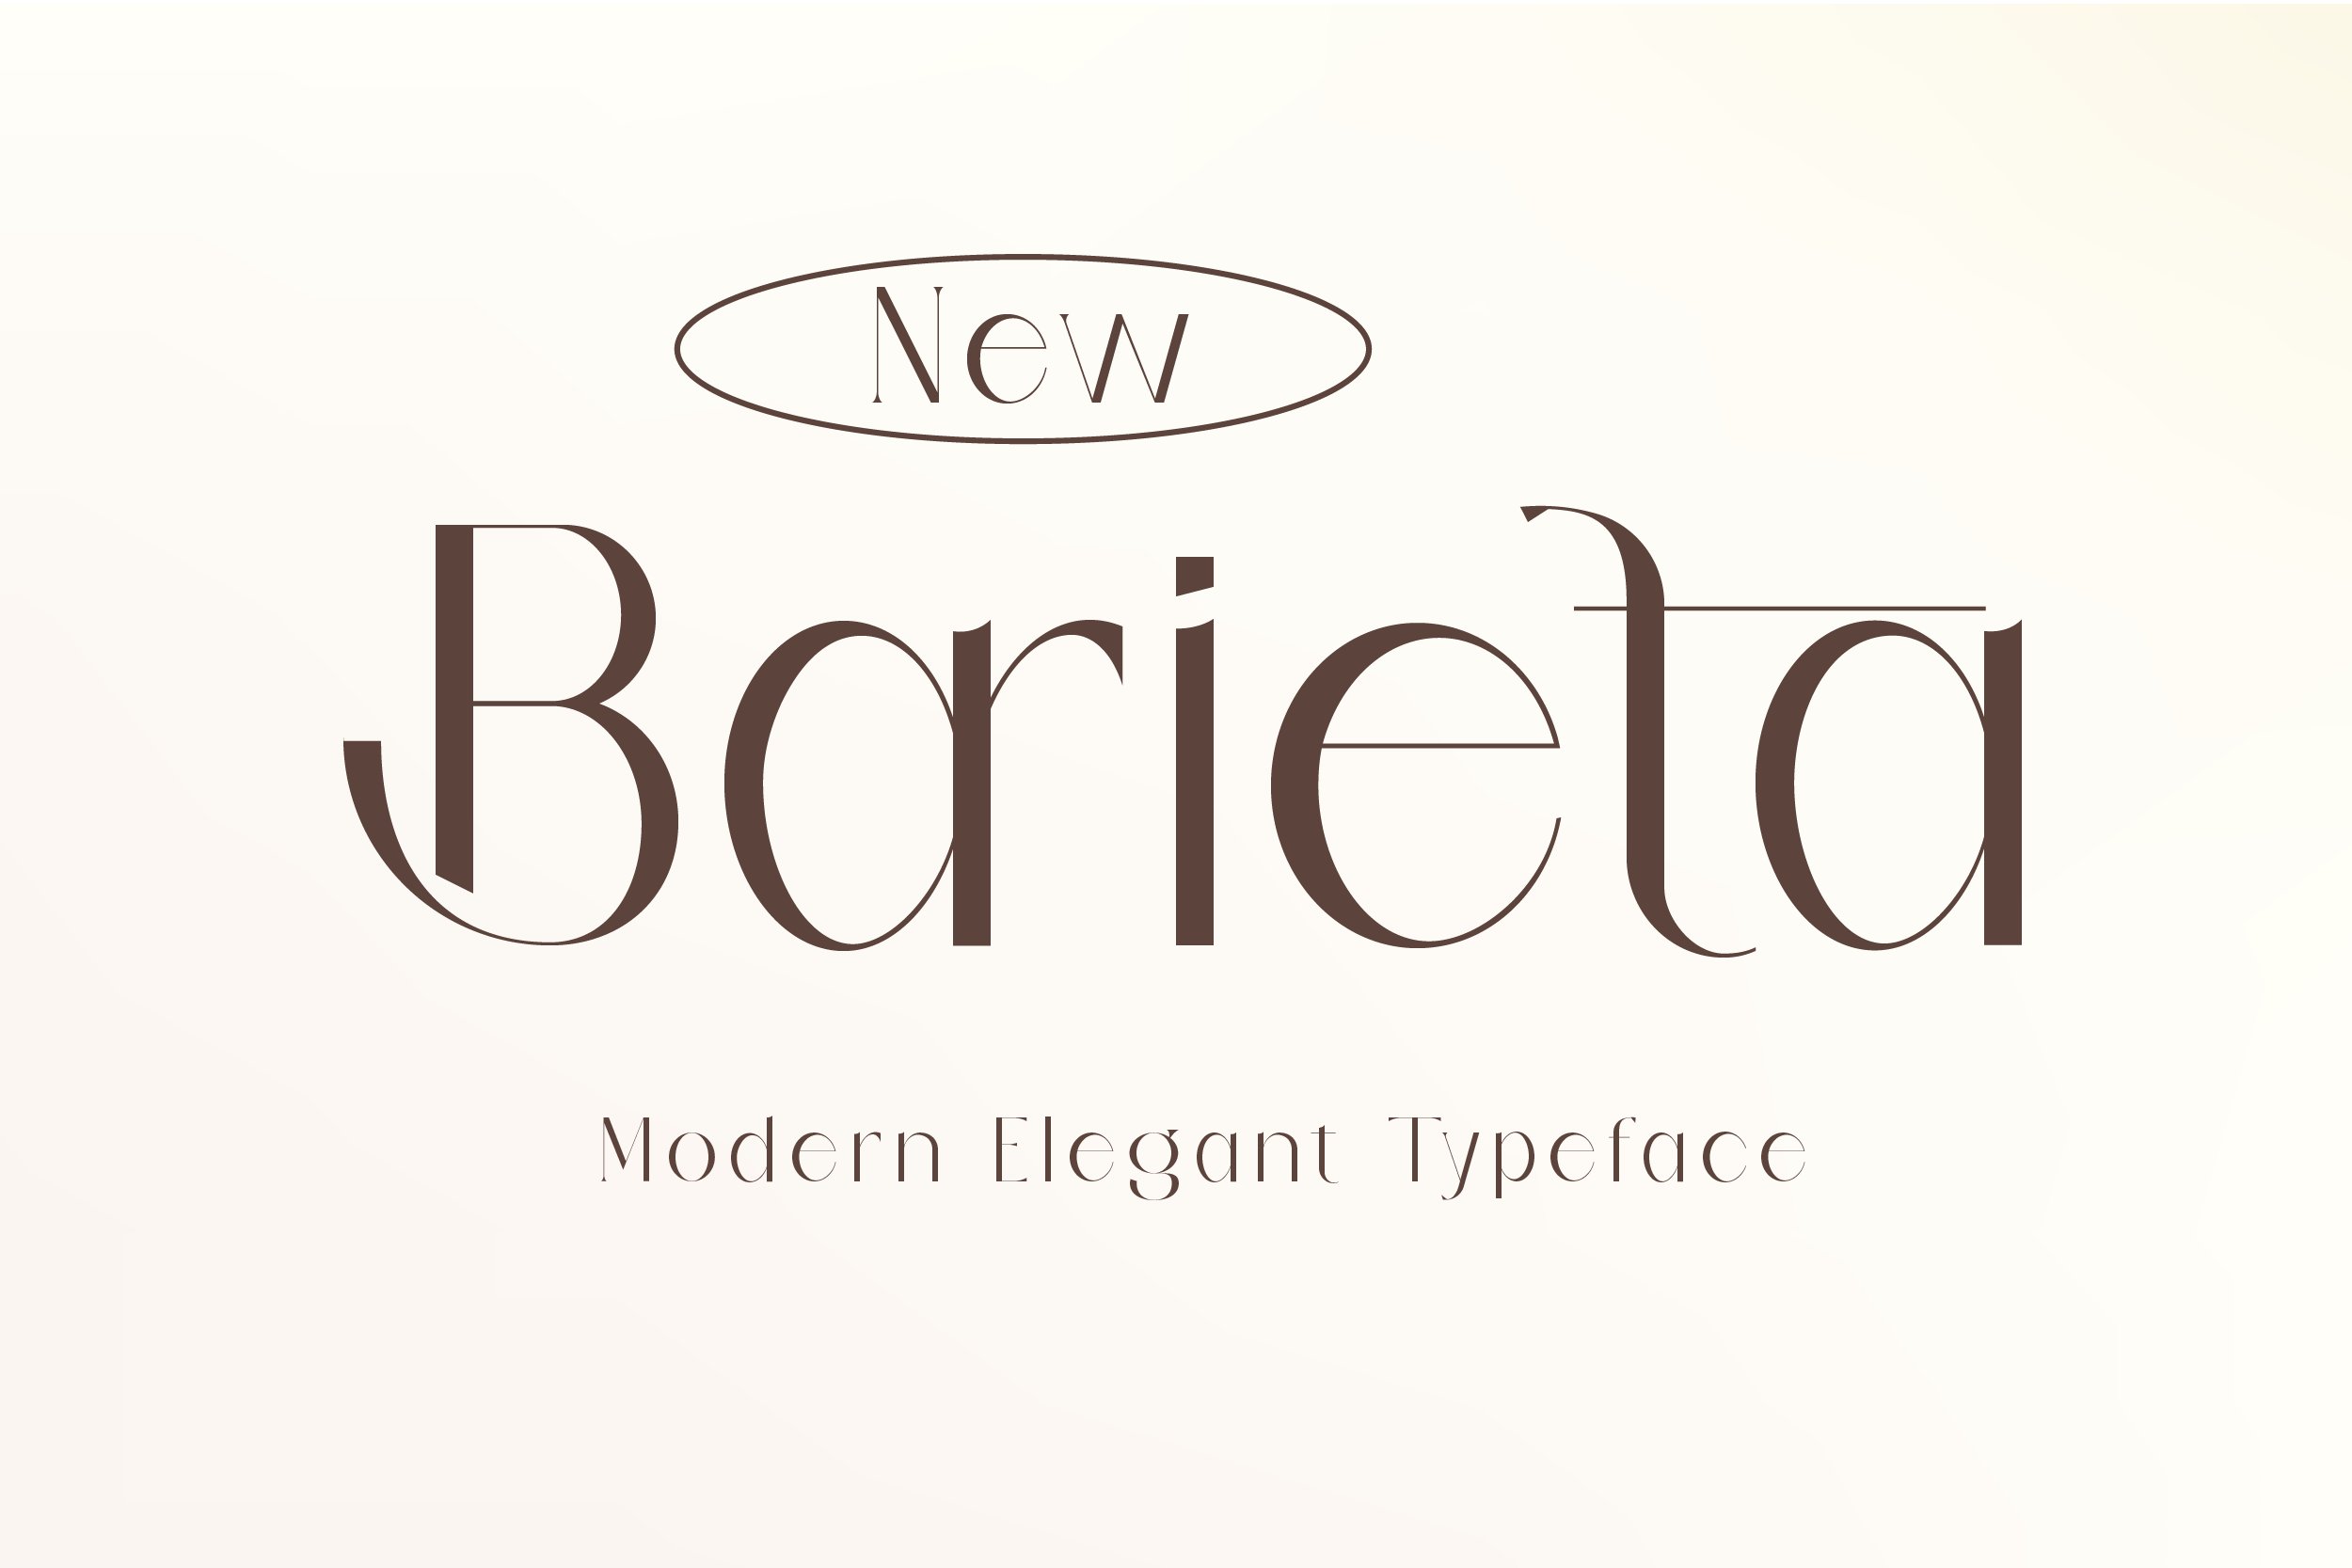 Barieta Elegant Typeface cover image.